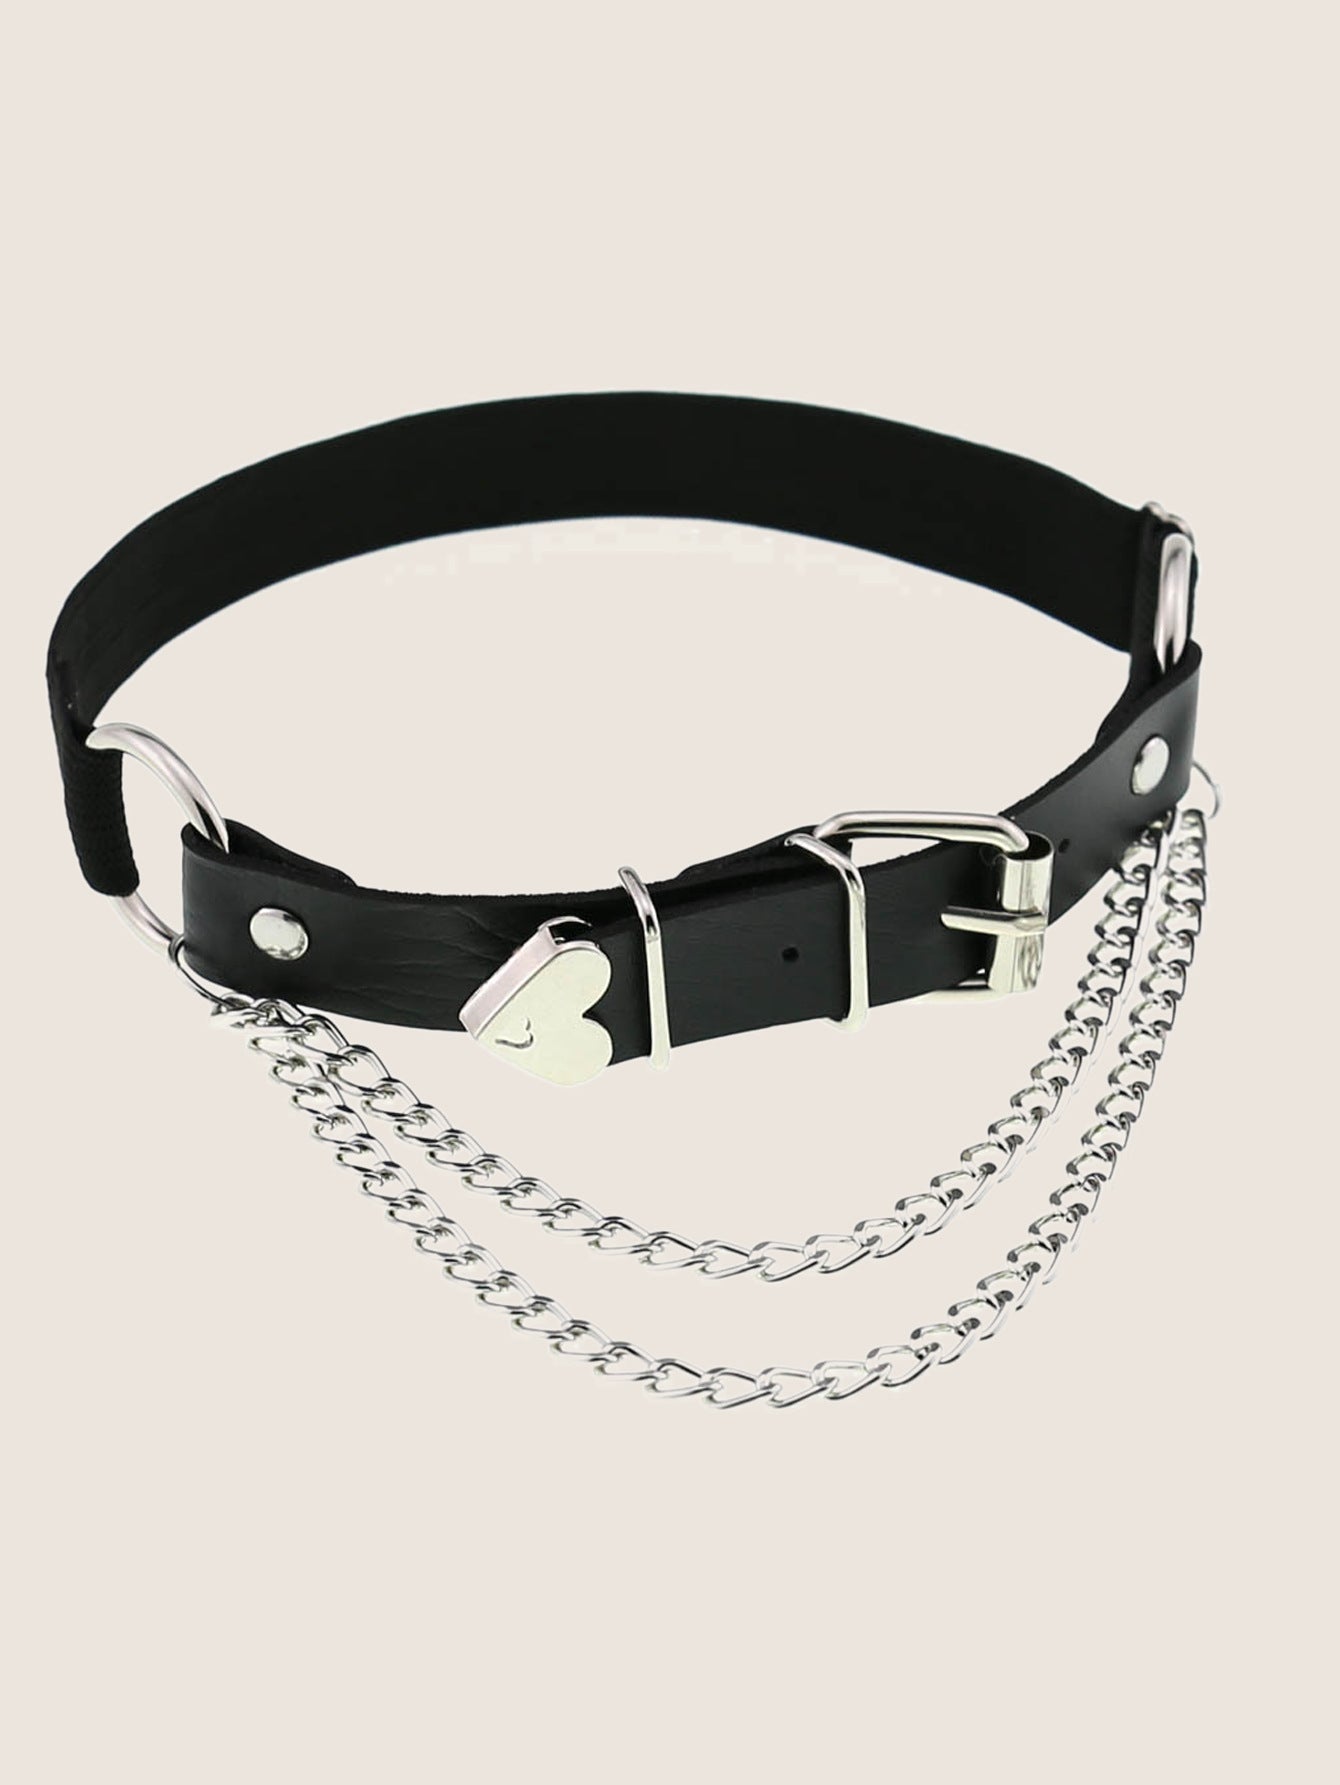 A Sex Heart Chain Elastic Leather Irregular Garter Belt